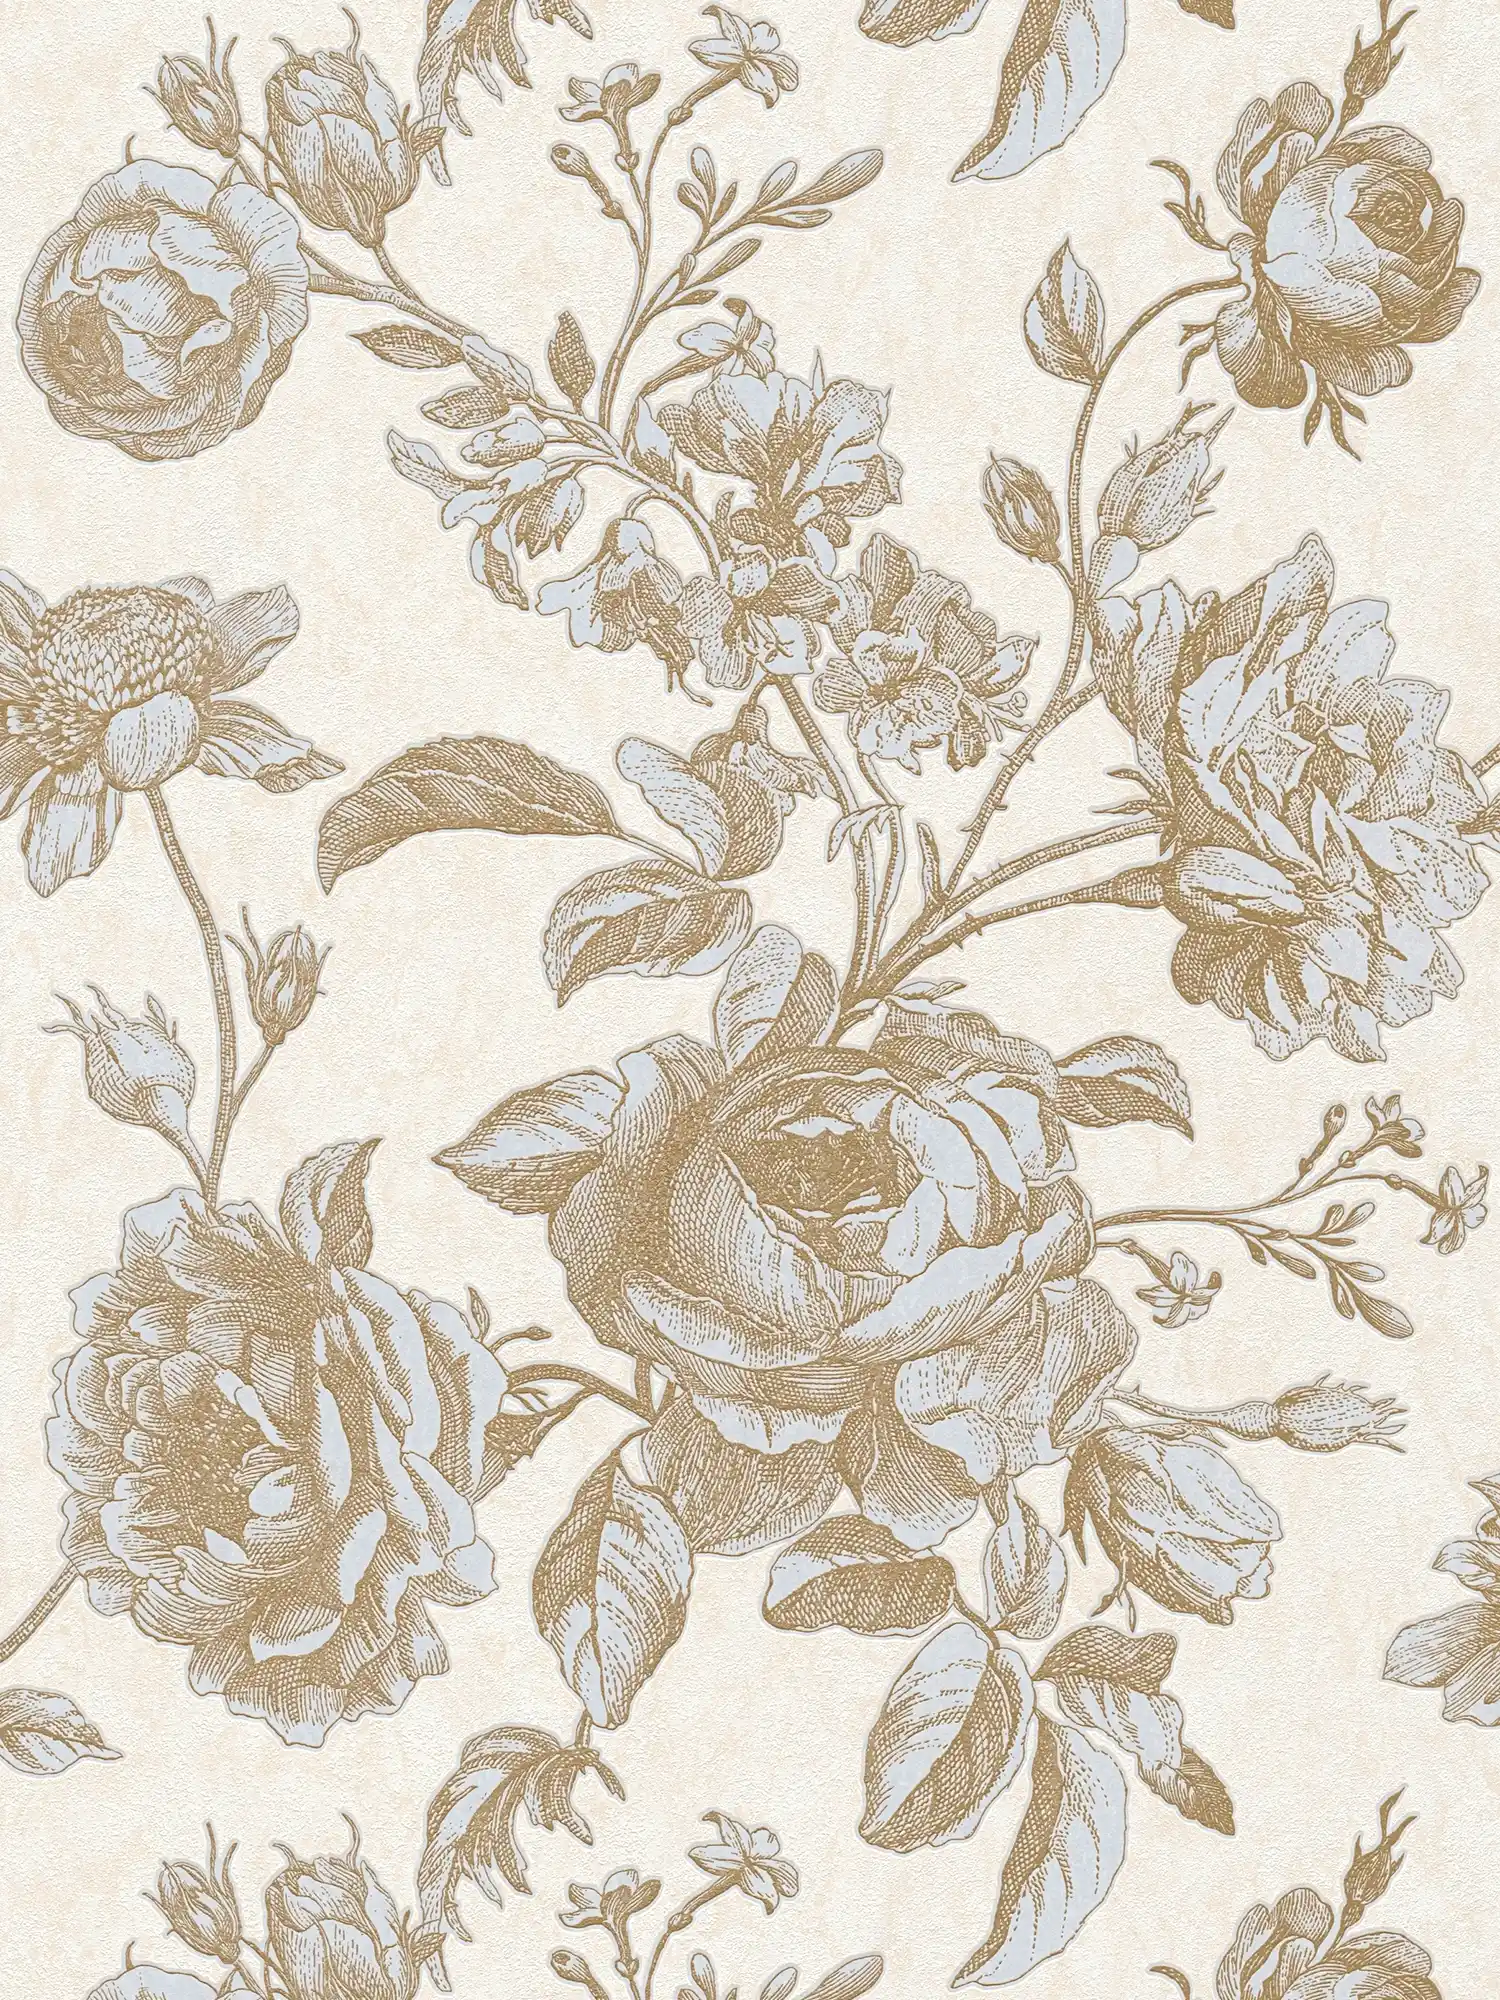 Vintage behang met rozenpatroon in grafische stijl - metallic, crème
